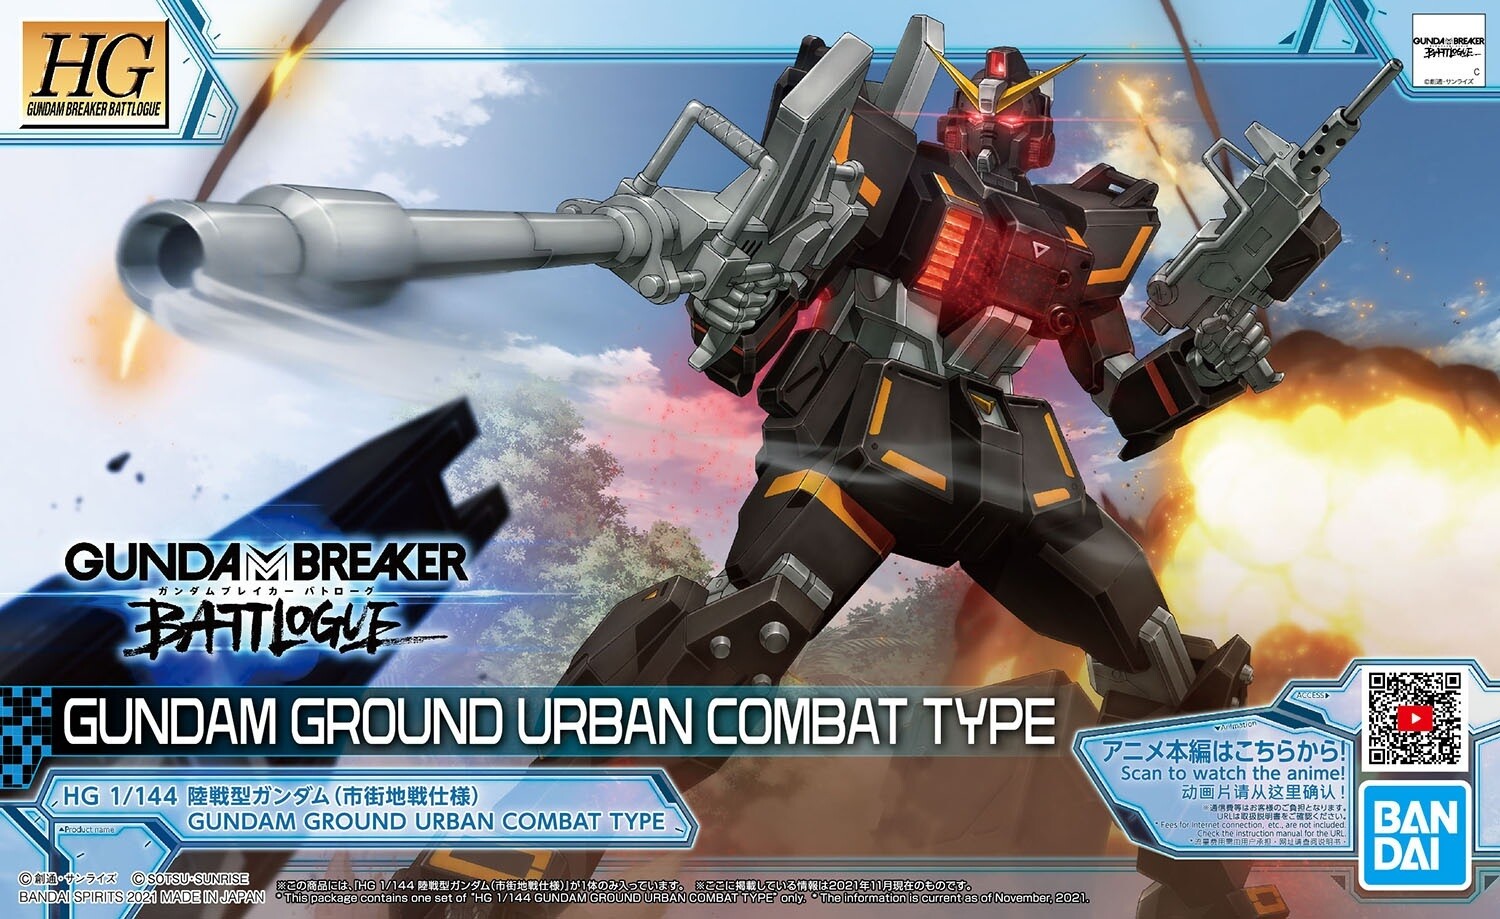 HG Gundan Ground Urban Combat Type